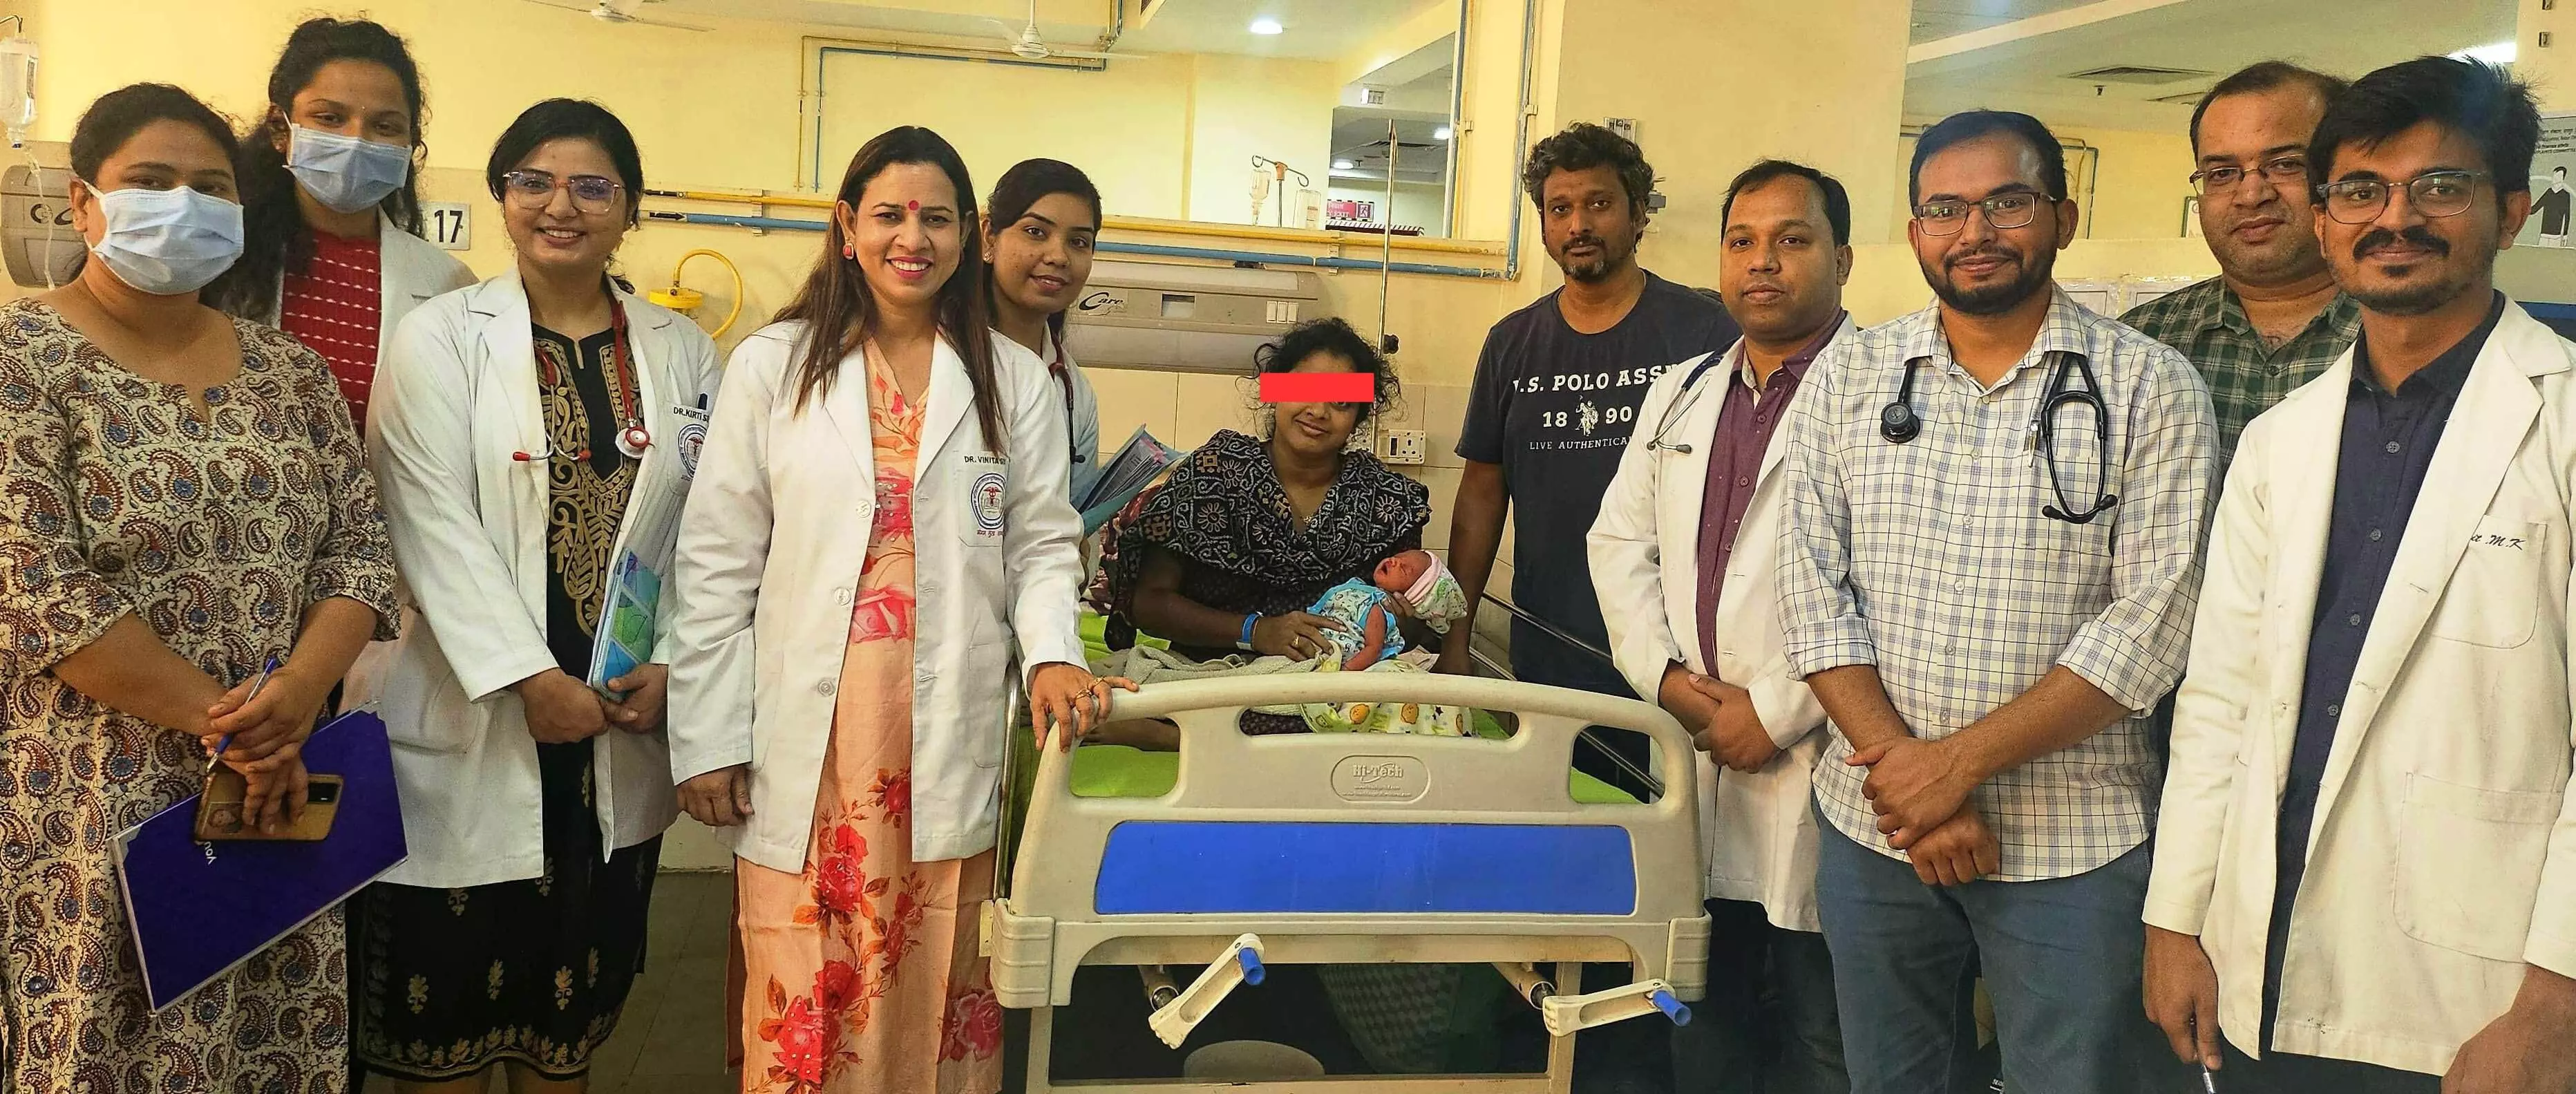 दुर्लभ बीमारी से ग्रसित गर्भवती महिला का रायपुर एम्स में हुआ सफलतापूर्वक प्रसव